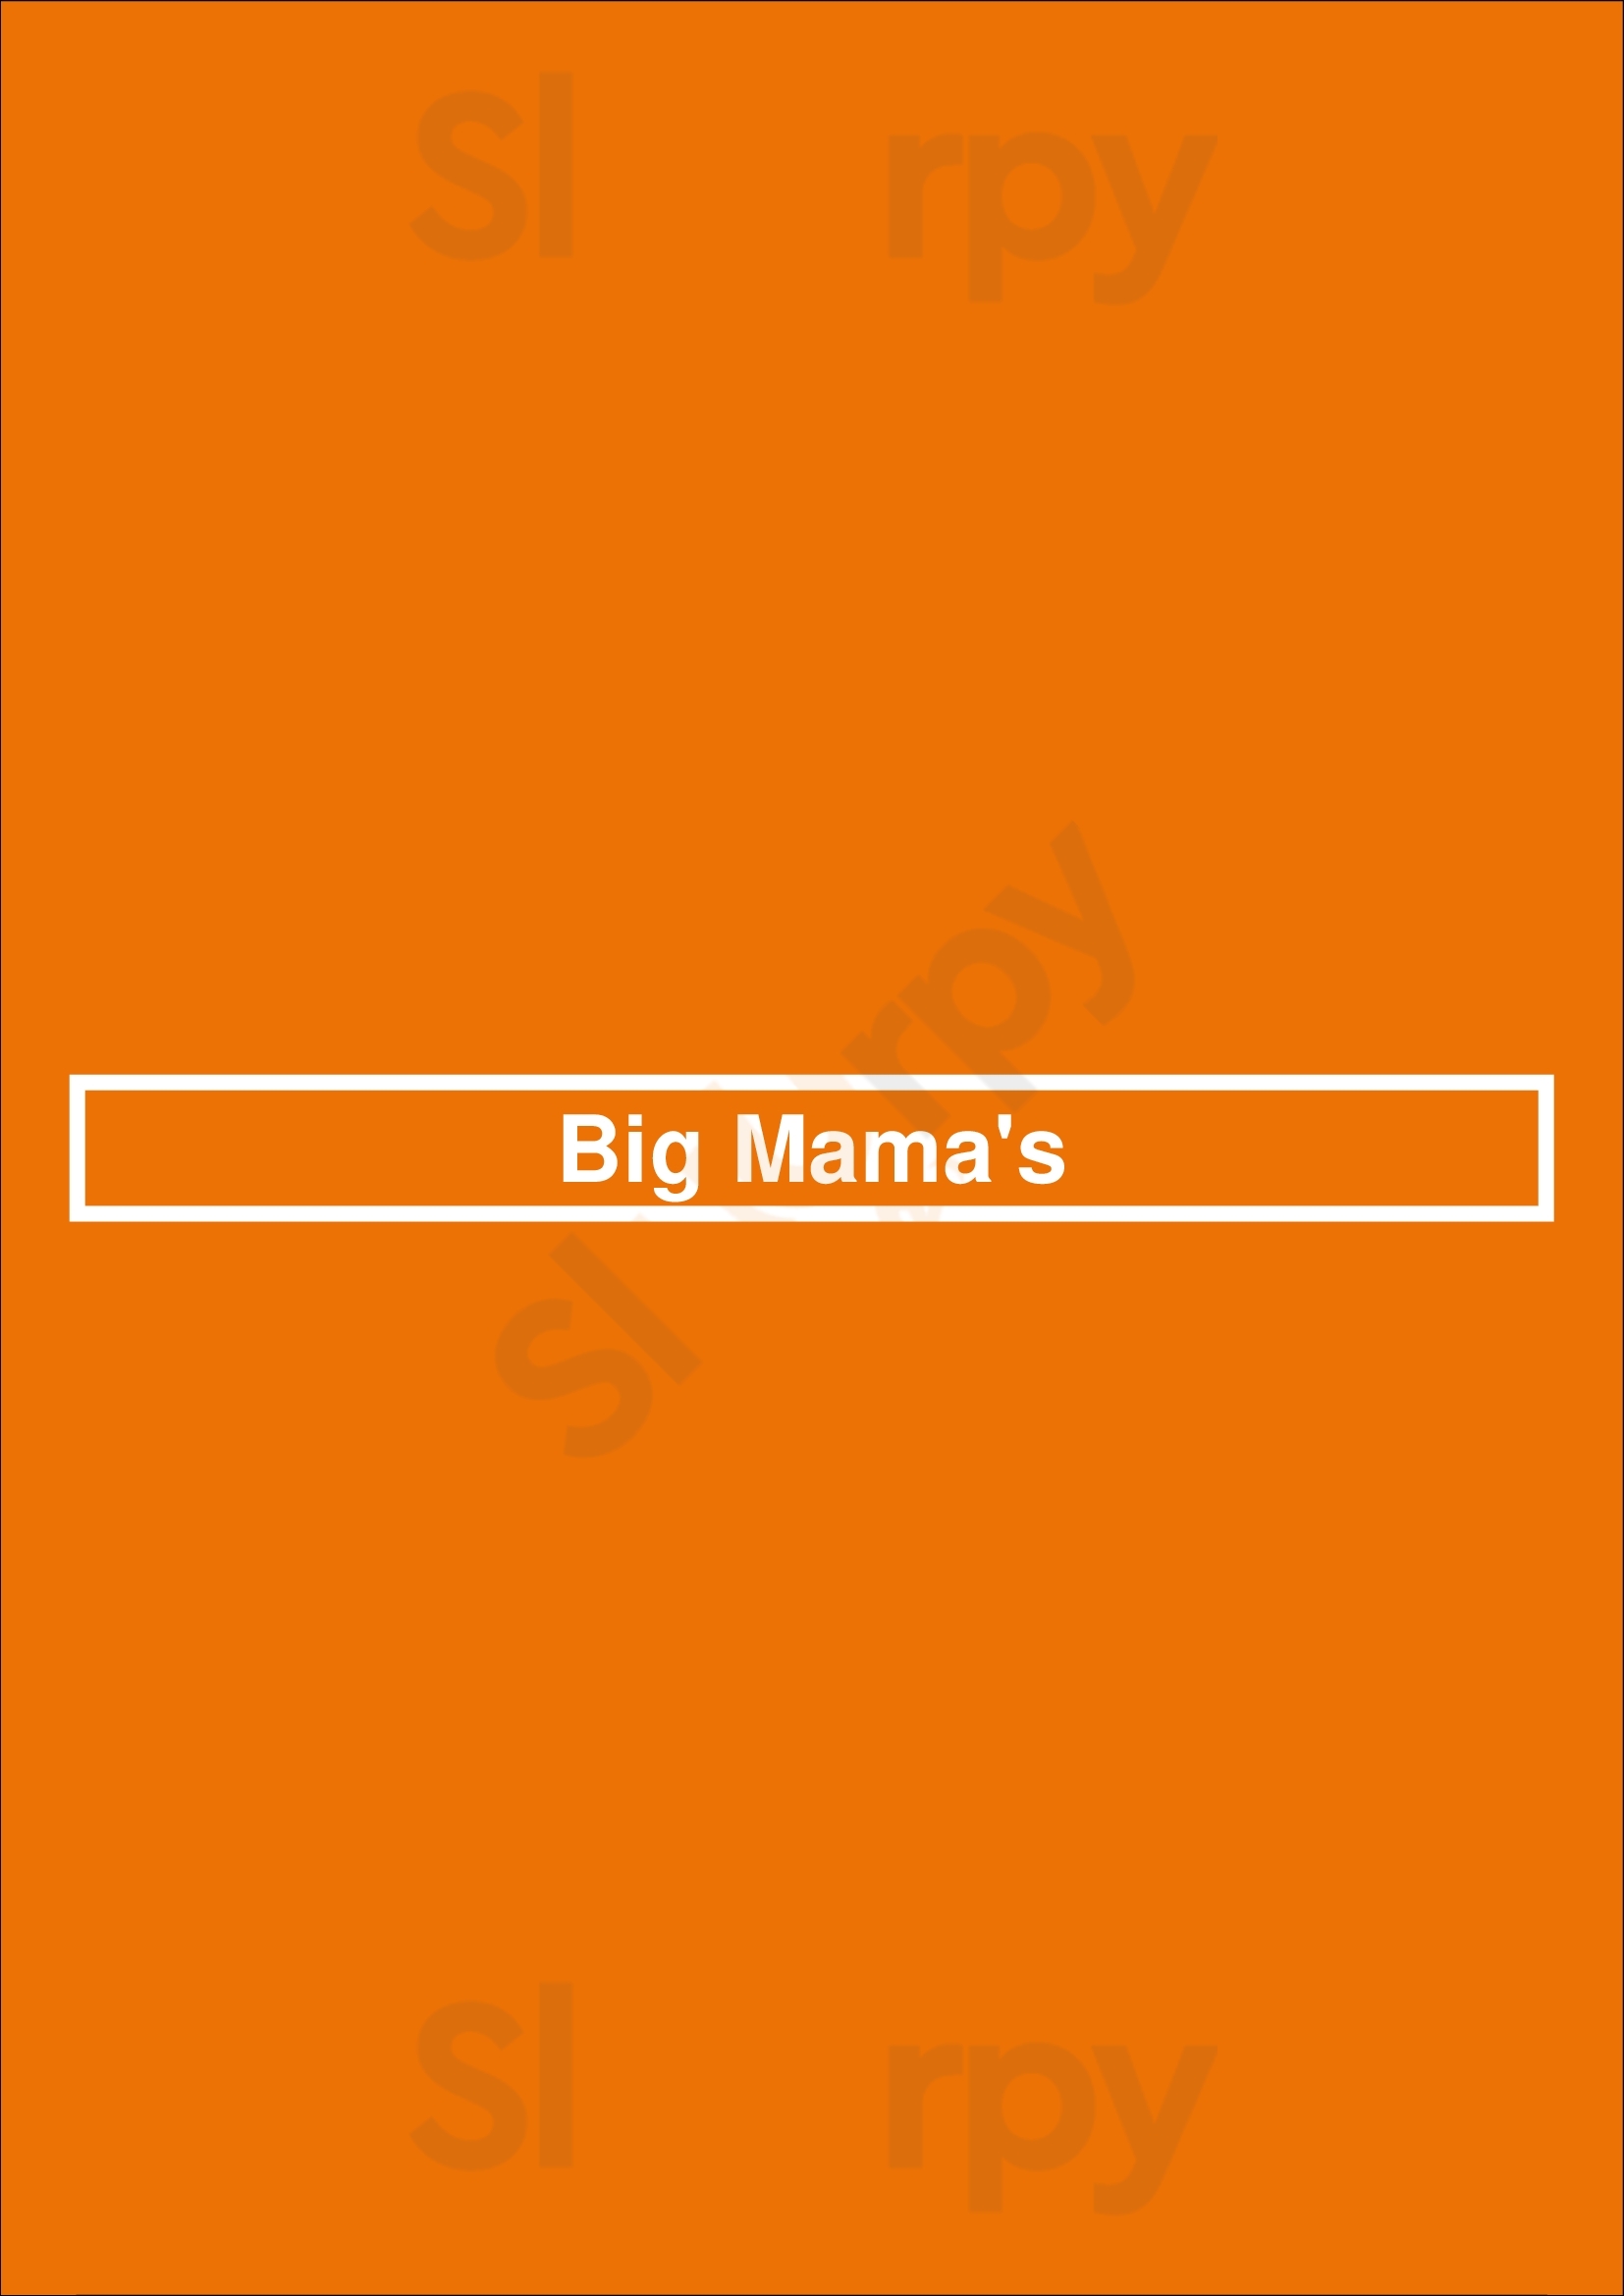 Big Mama's Bedlington Menu - 1